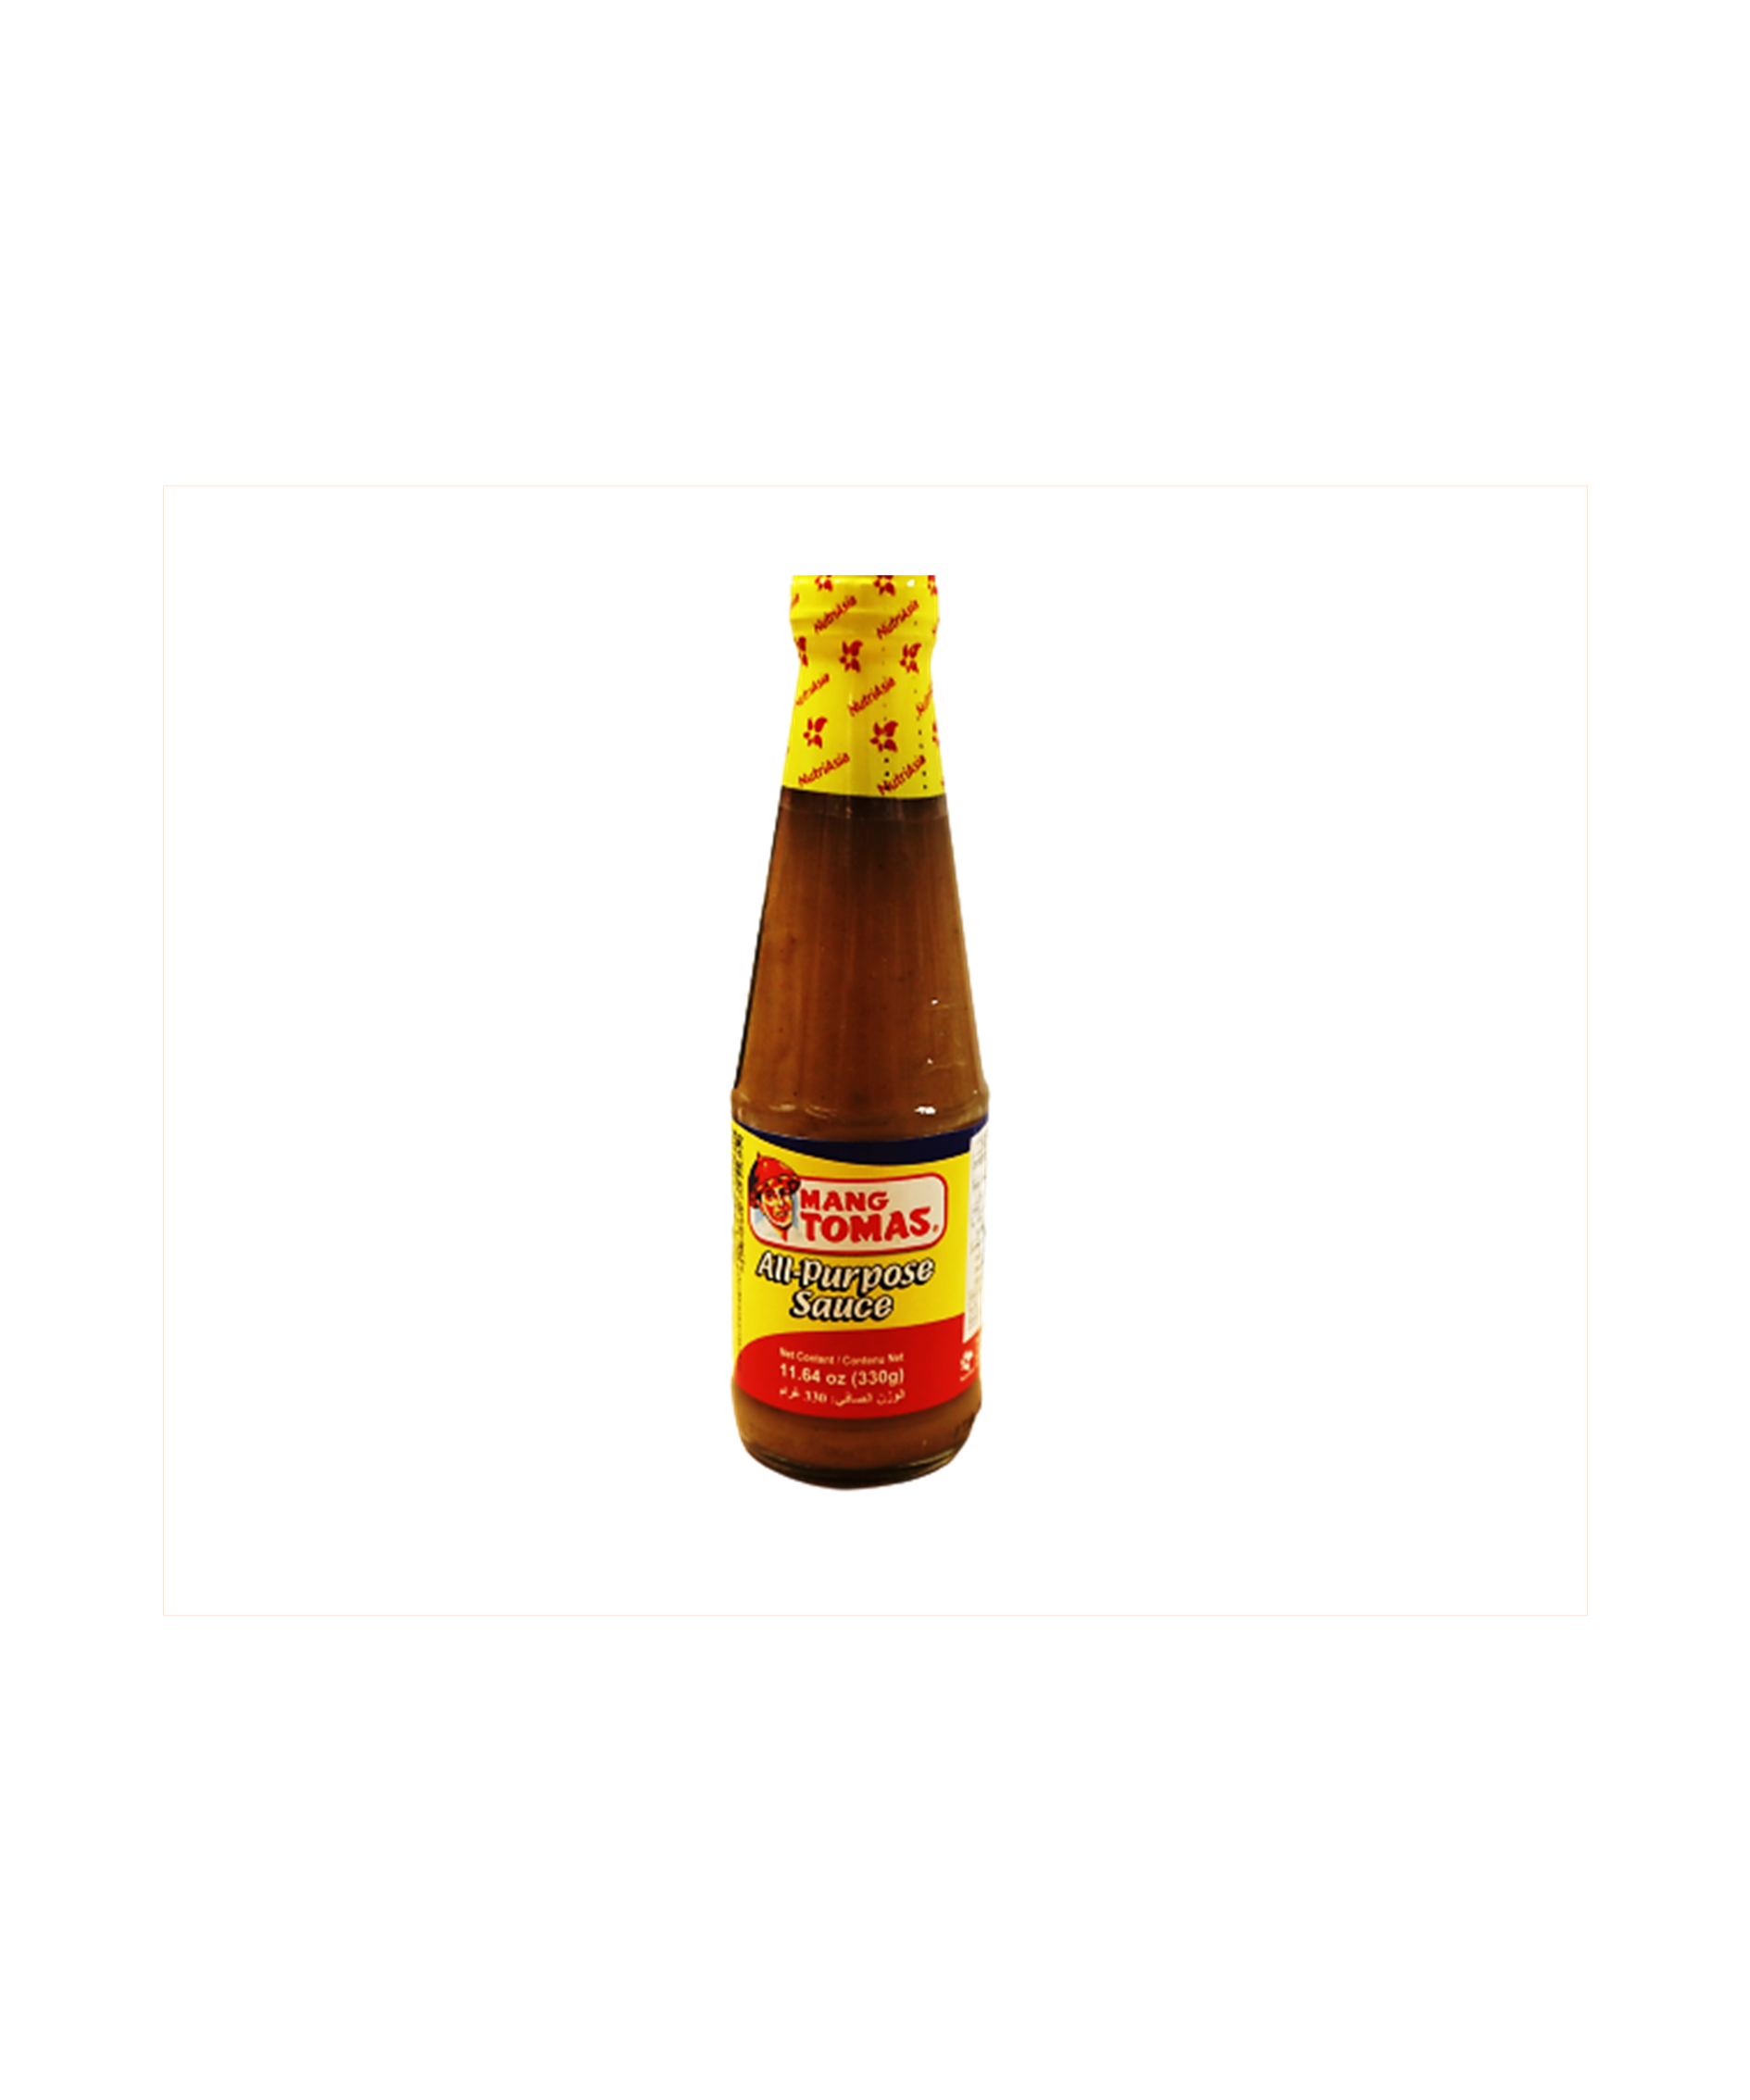 Mang Tomas Lechon Sauce – Regular 330g